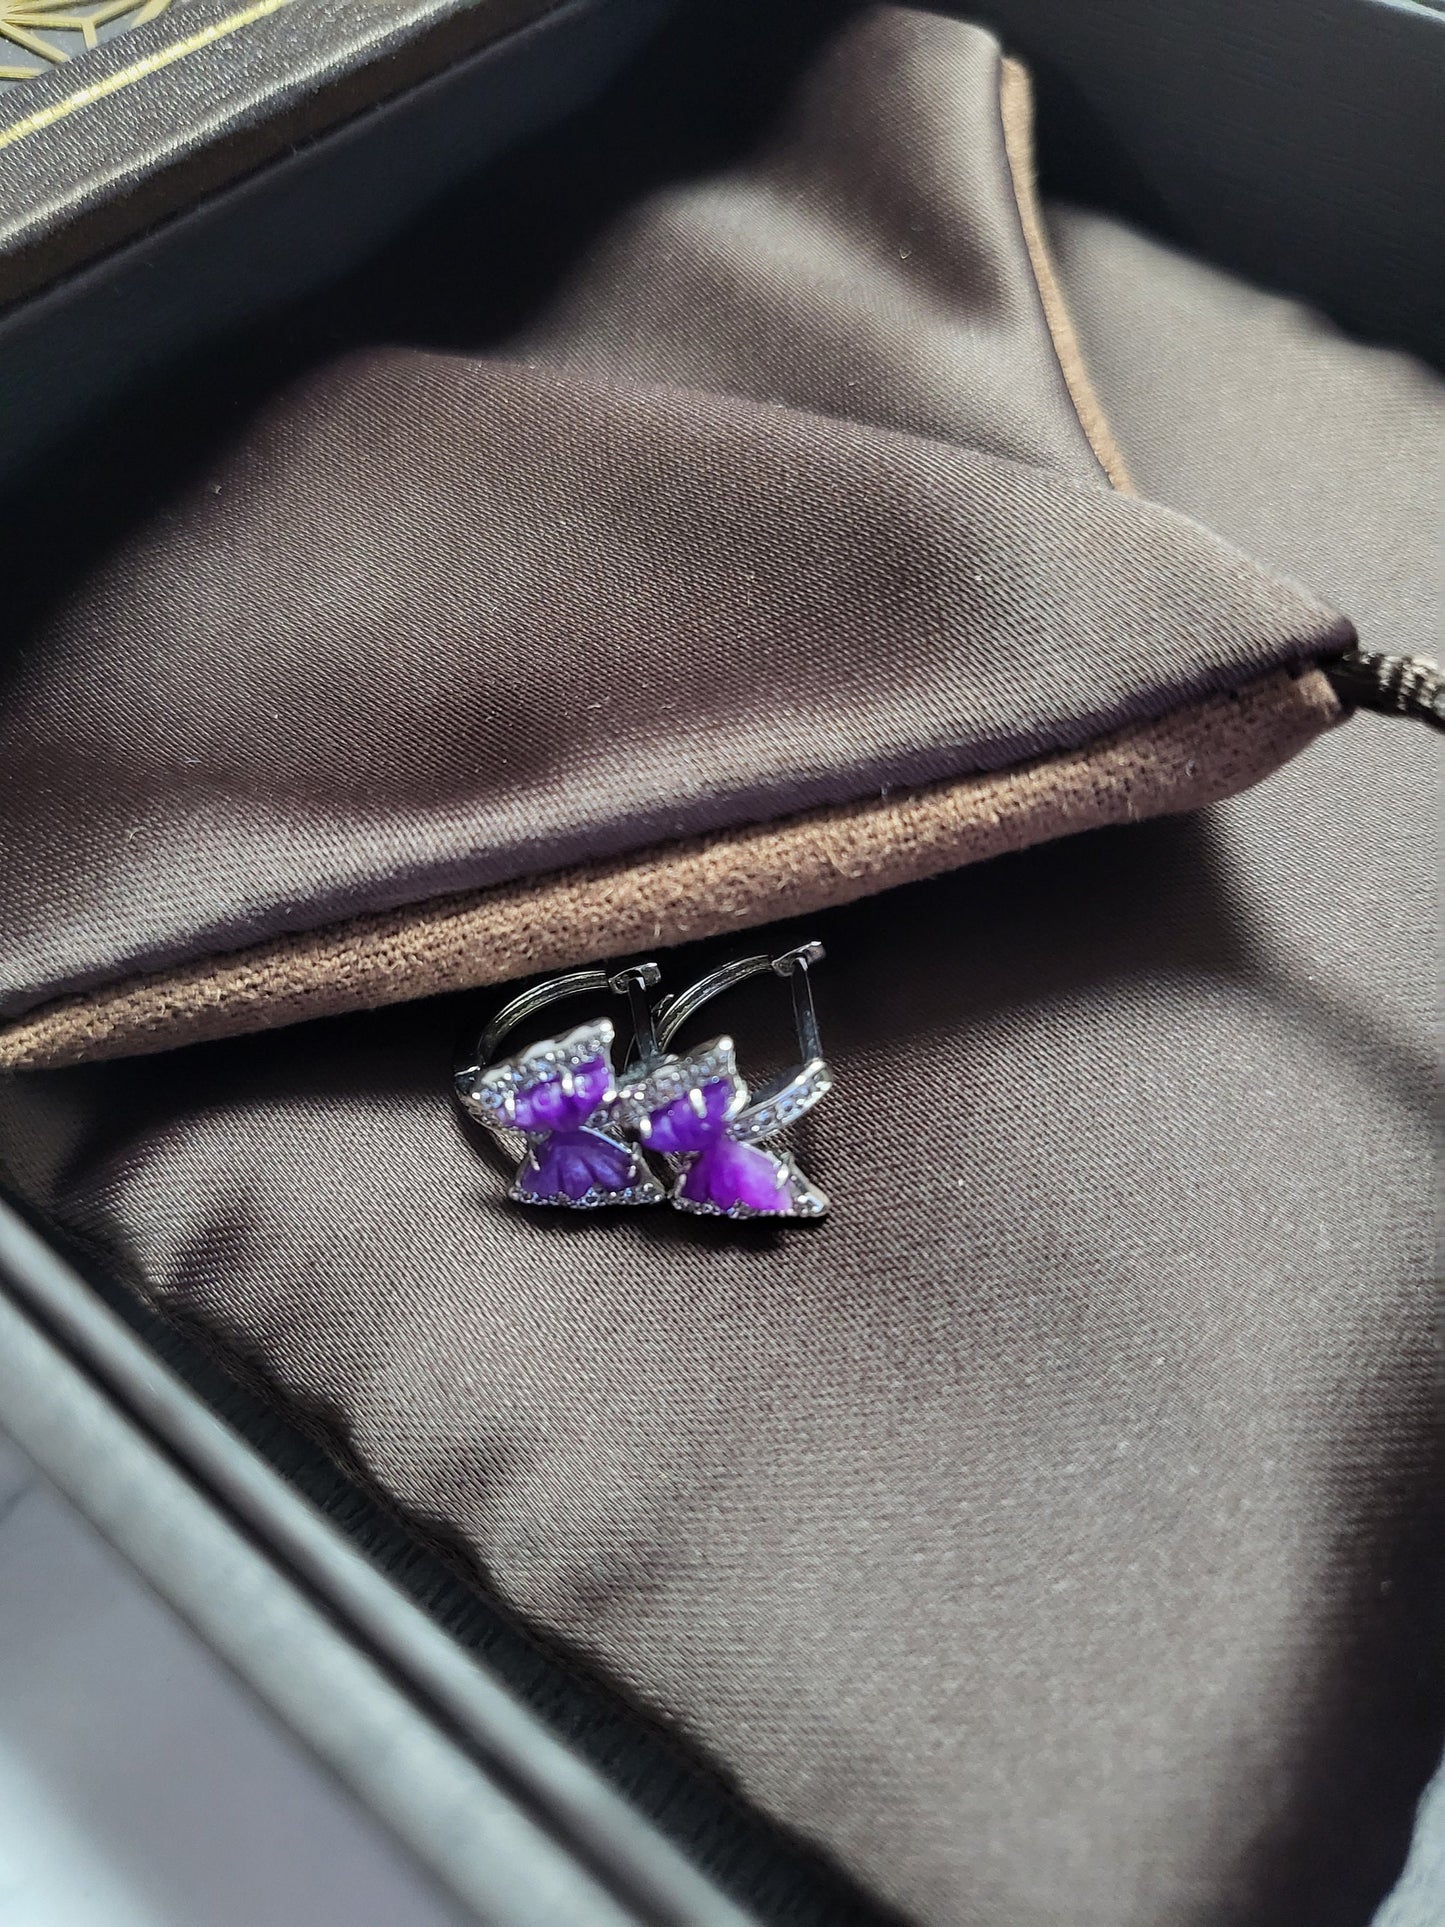 Rare Sugilite Earrings Gel Natural Gemstone Purple Silver Hoop Earrings Butterfly Carving with Crystals